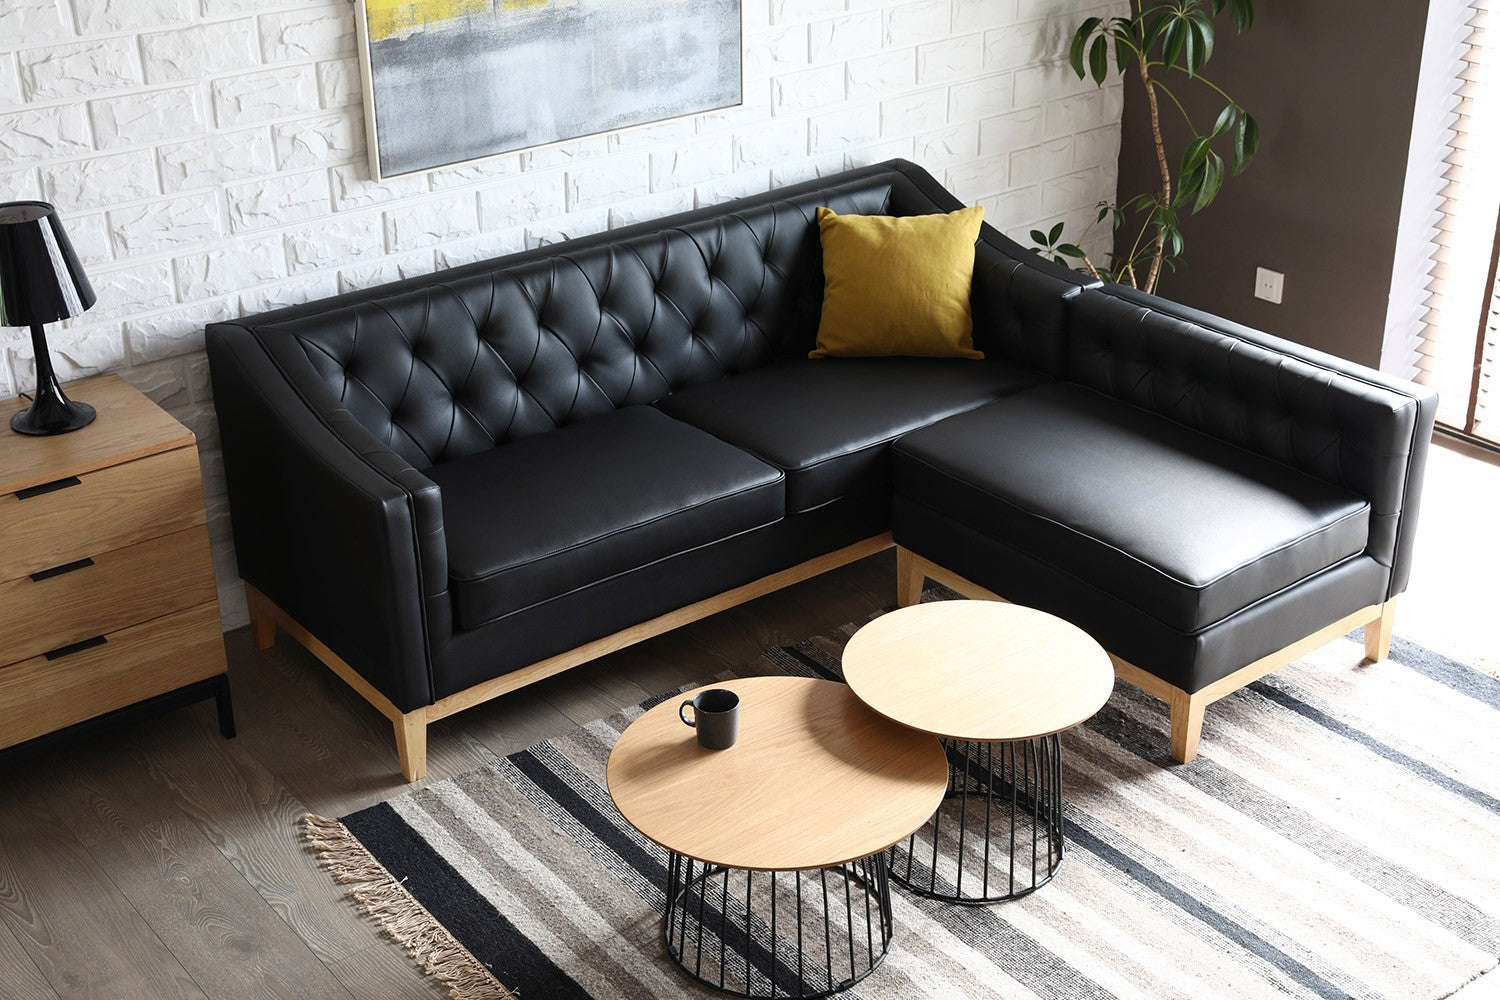 Comment nettoyer un canapé en cuir ? – Concept Usine